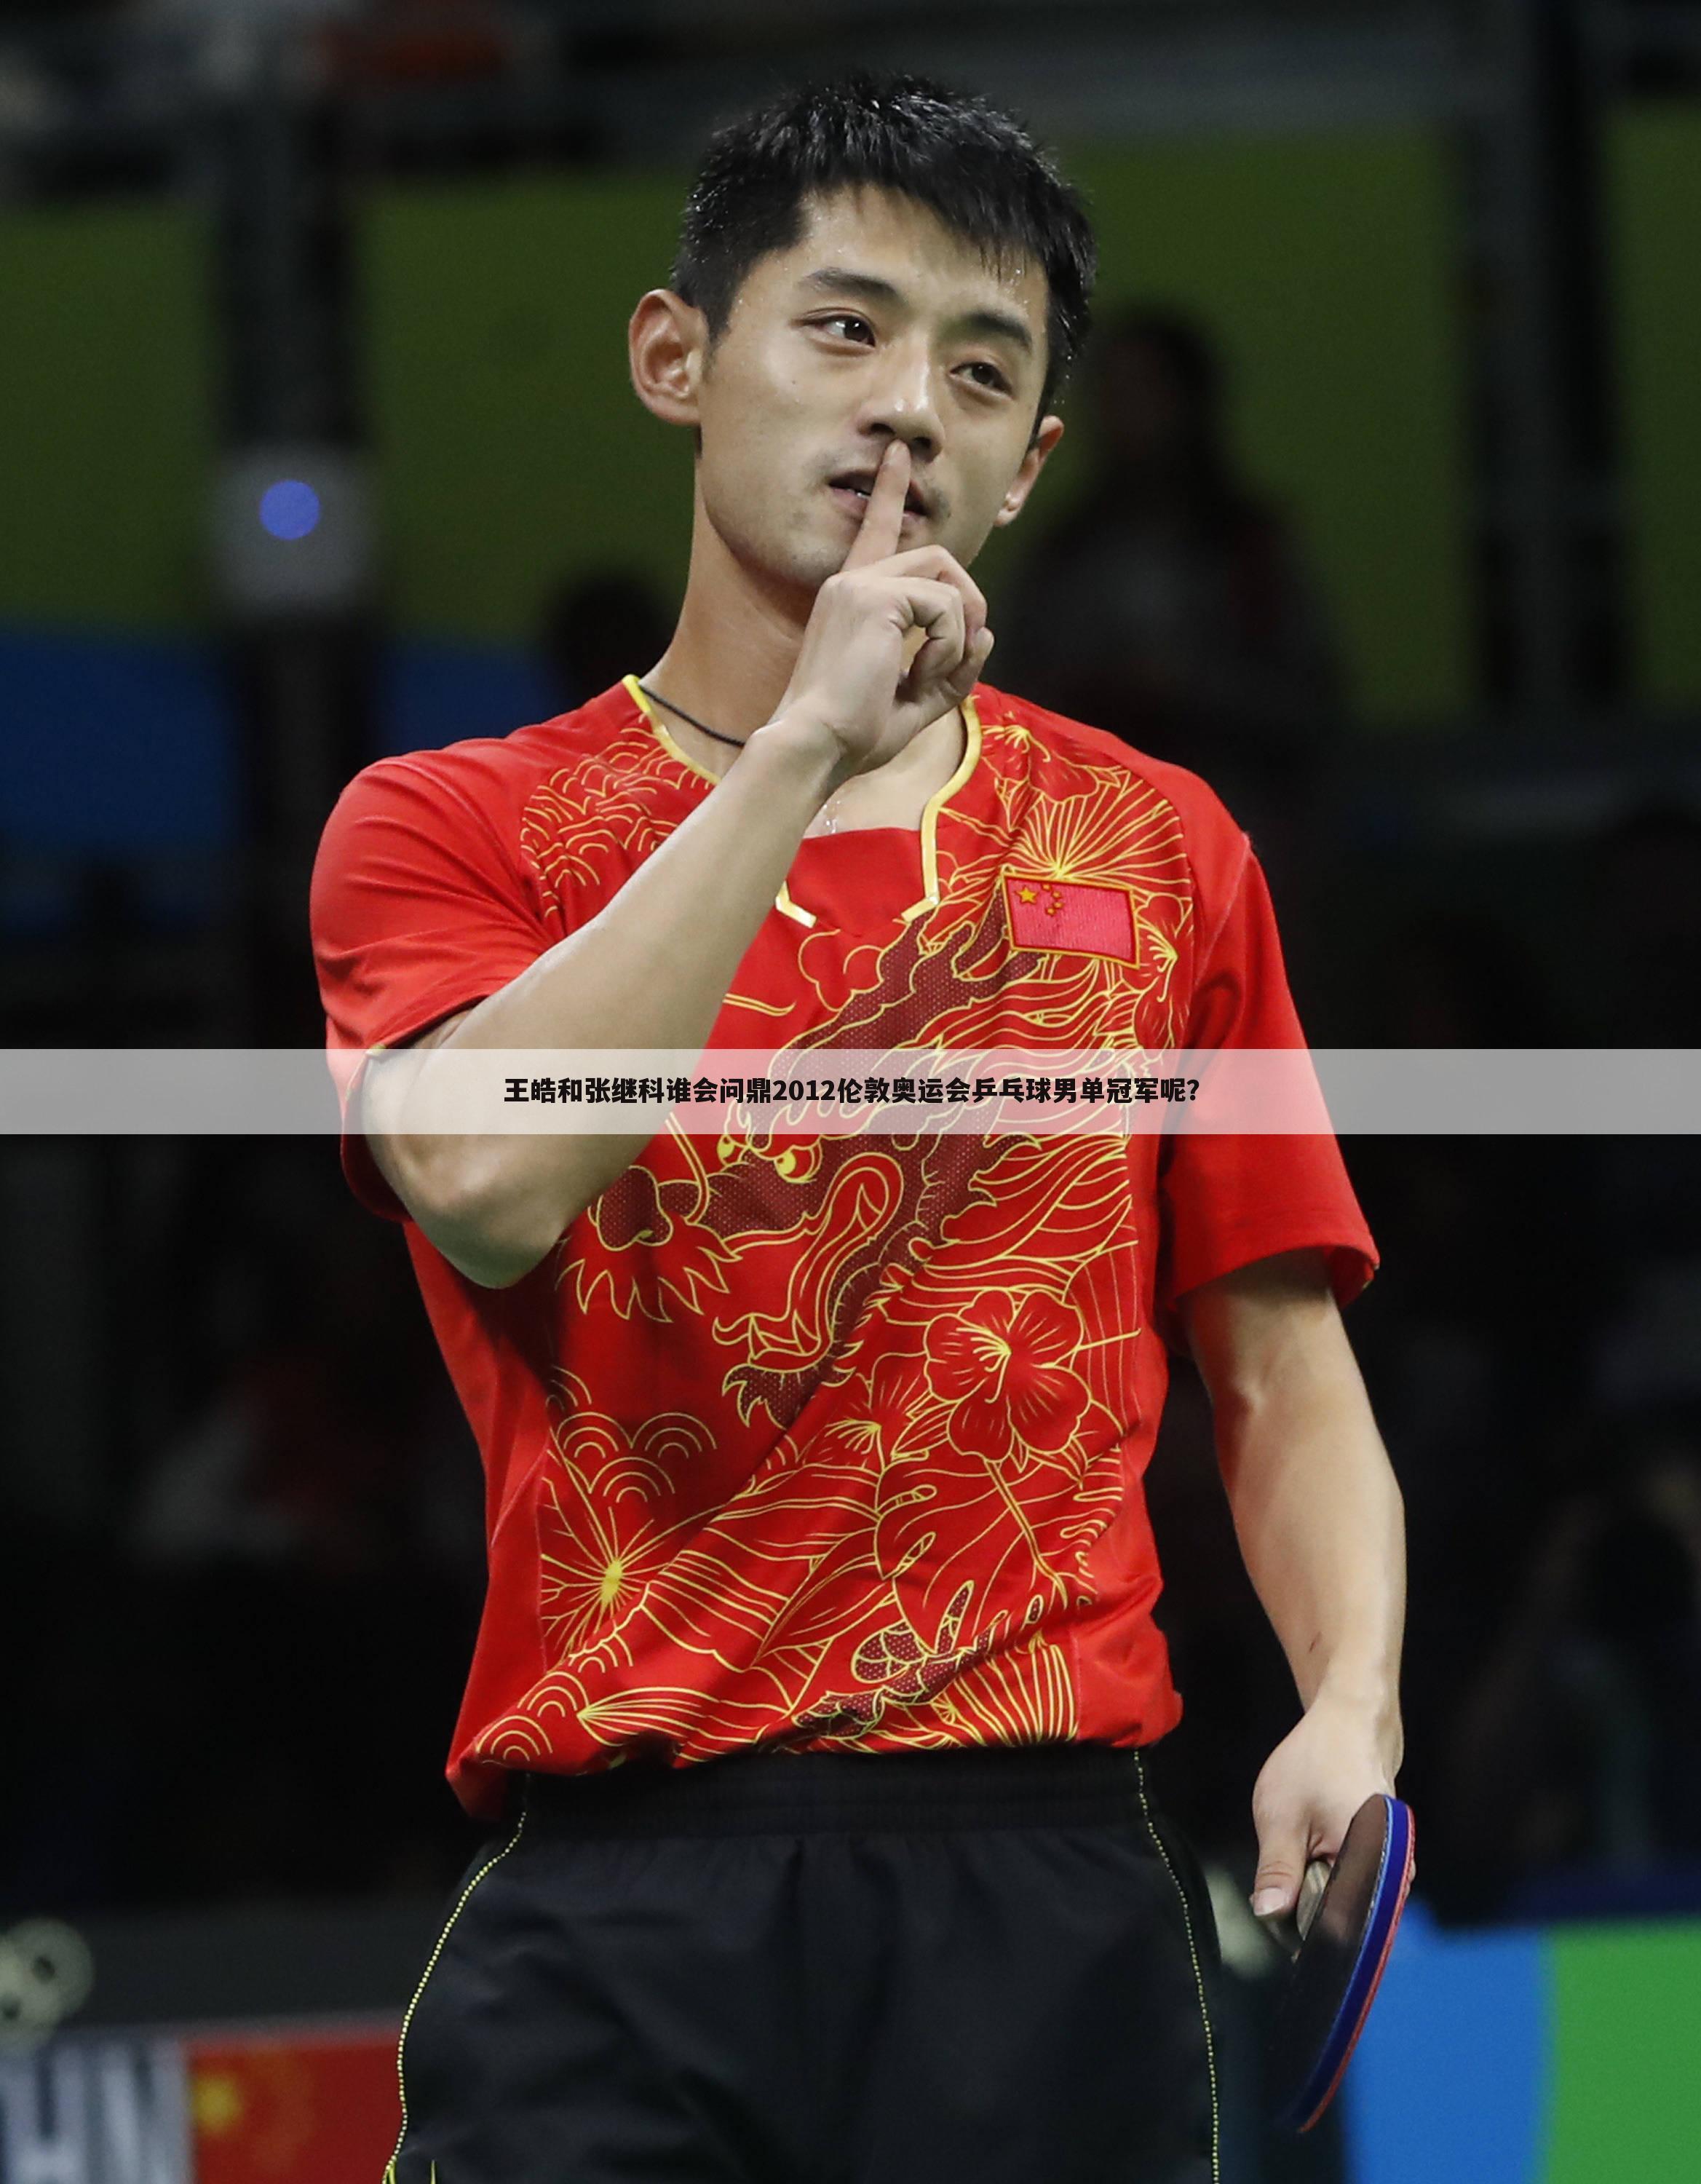 【2012年奥运】2012年奥运会乒乓球男单冠军